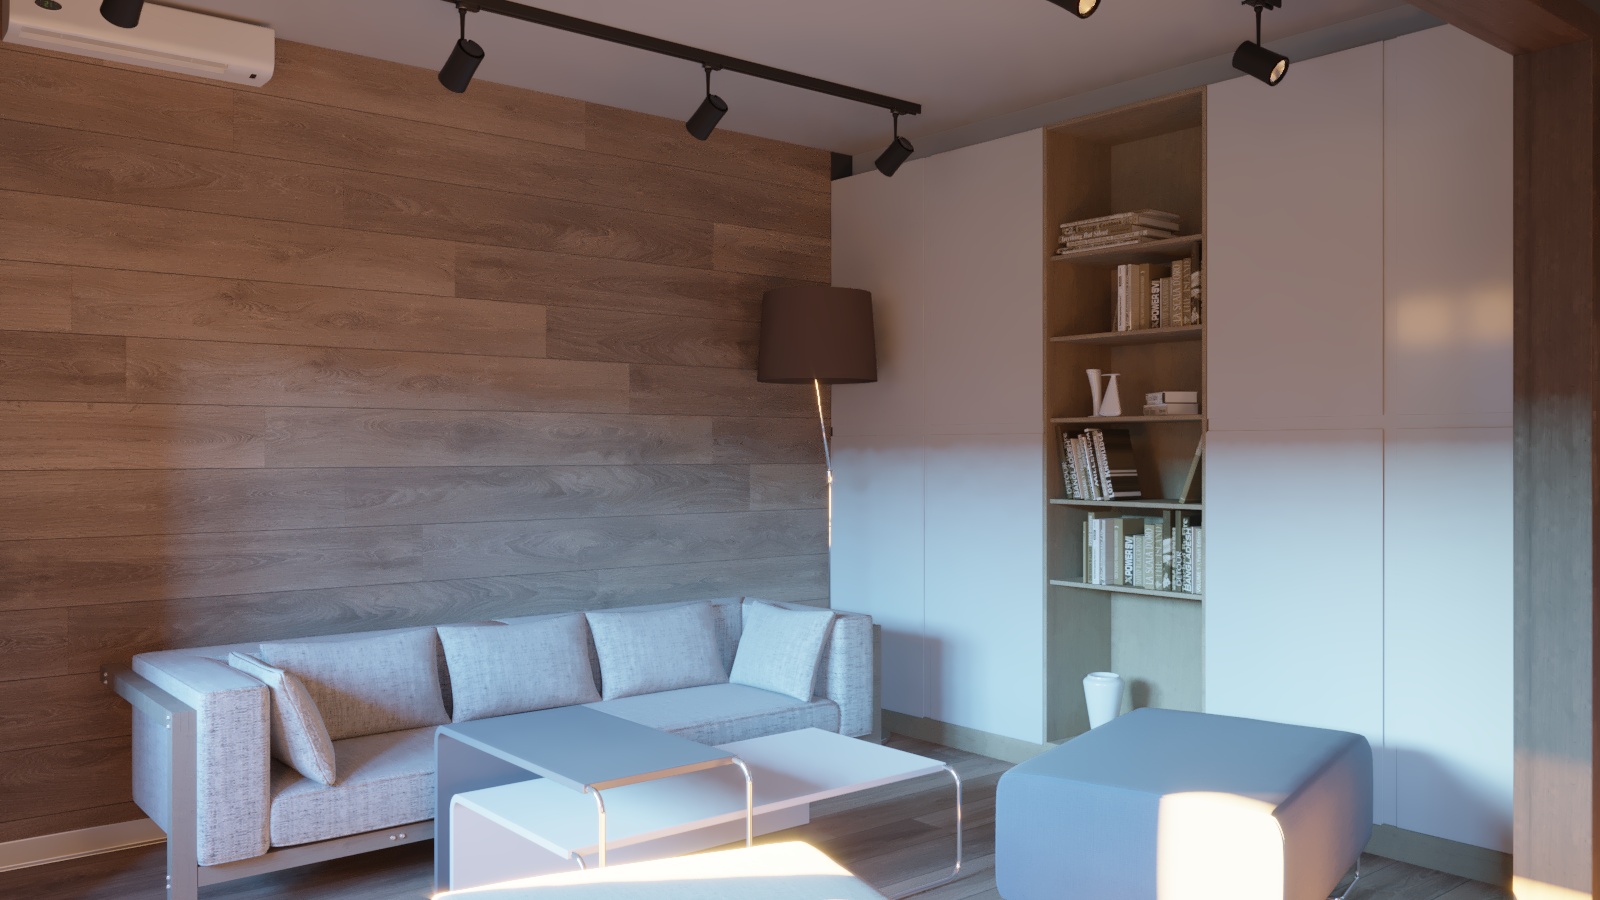 Cozinha com uma pequena sala de estar em 3d max corona render imagem